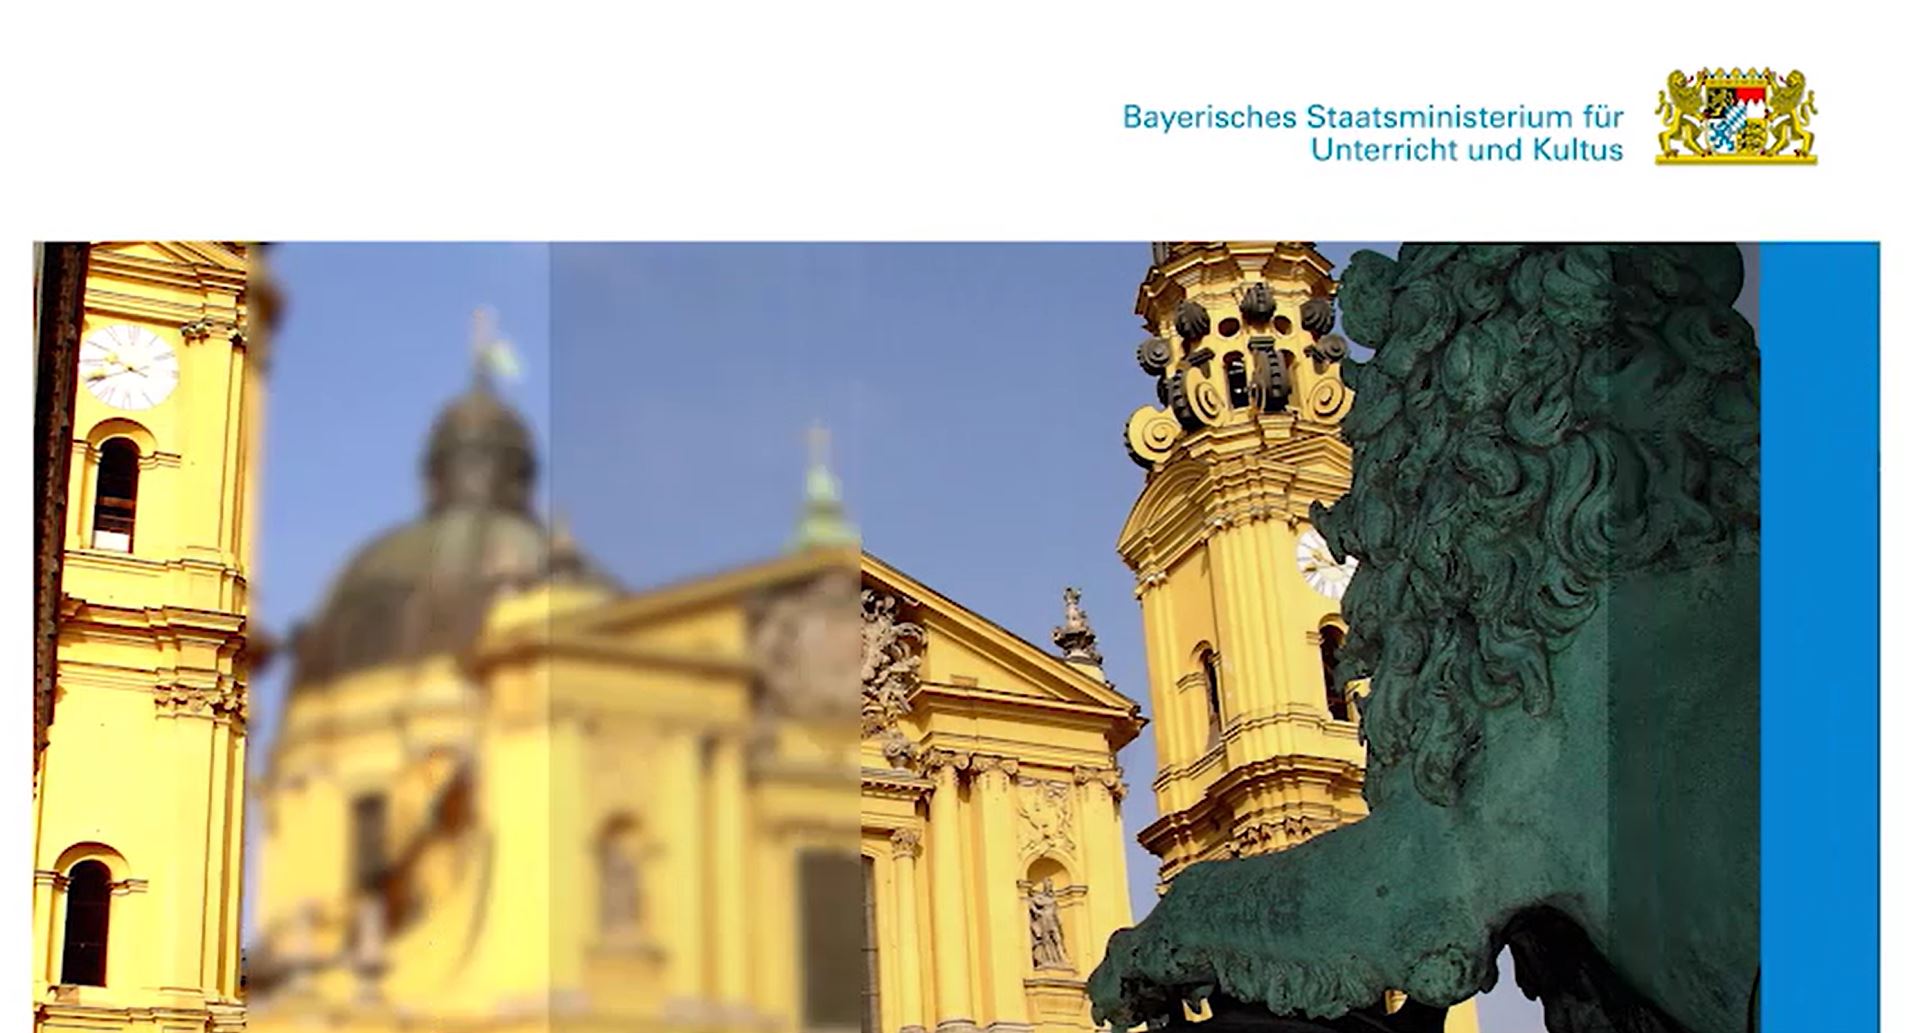 Das Video informiert über das Bayerische Staatsministerium für Unterricht und Kultus.